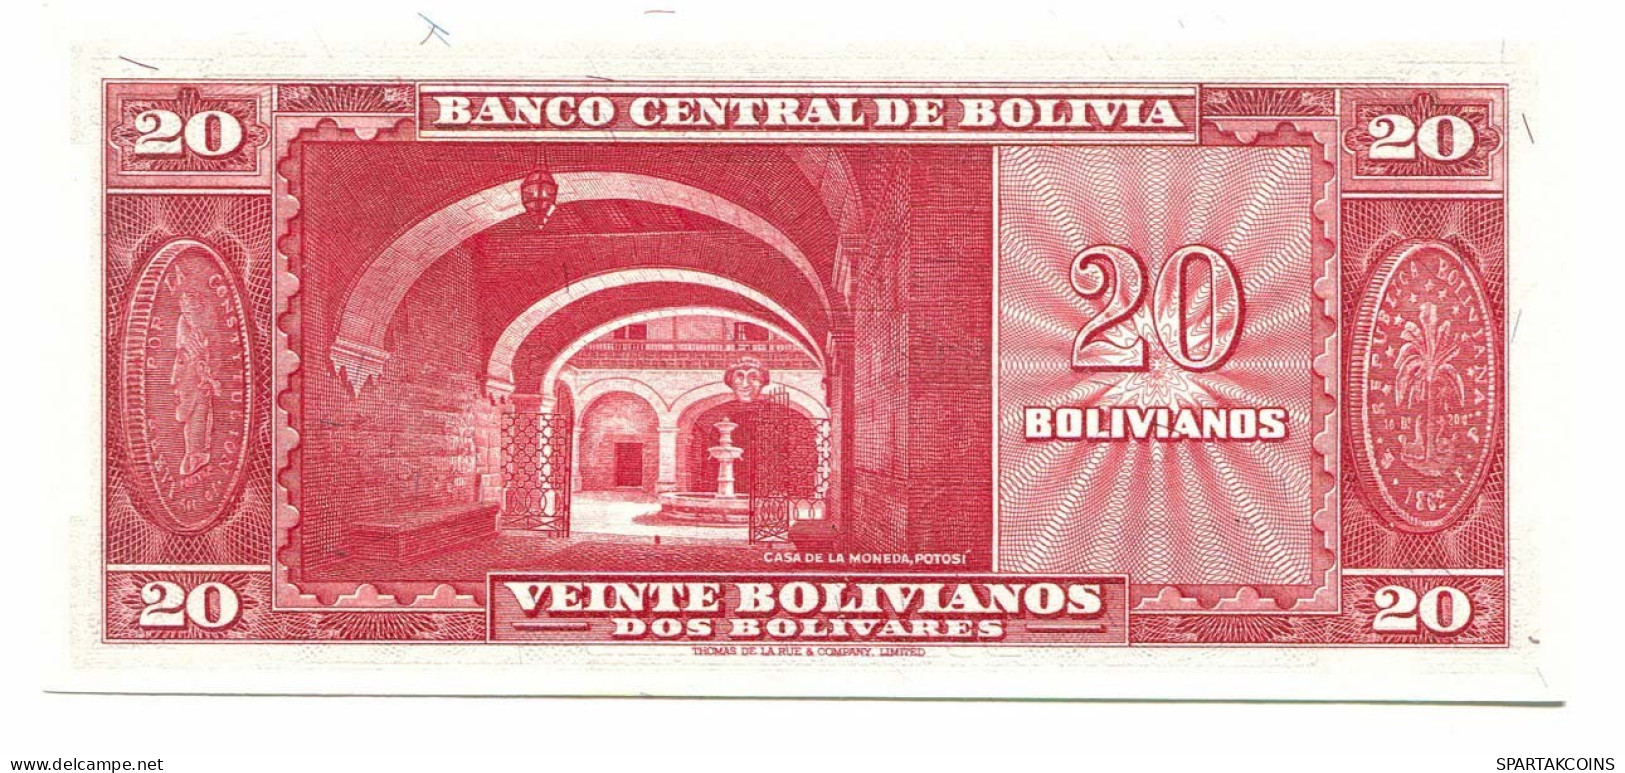 BOLIVIA 20 BOLIVIANOS 1945 SERIE P AUNC Paper Money Banknote #P10798X.4 - Lokale Ausgaben